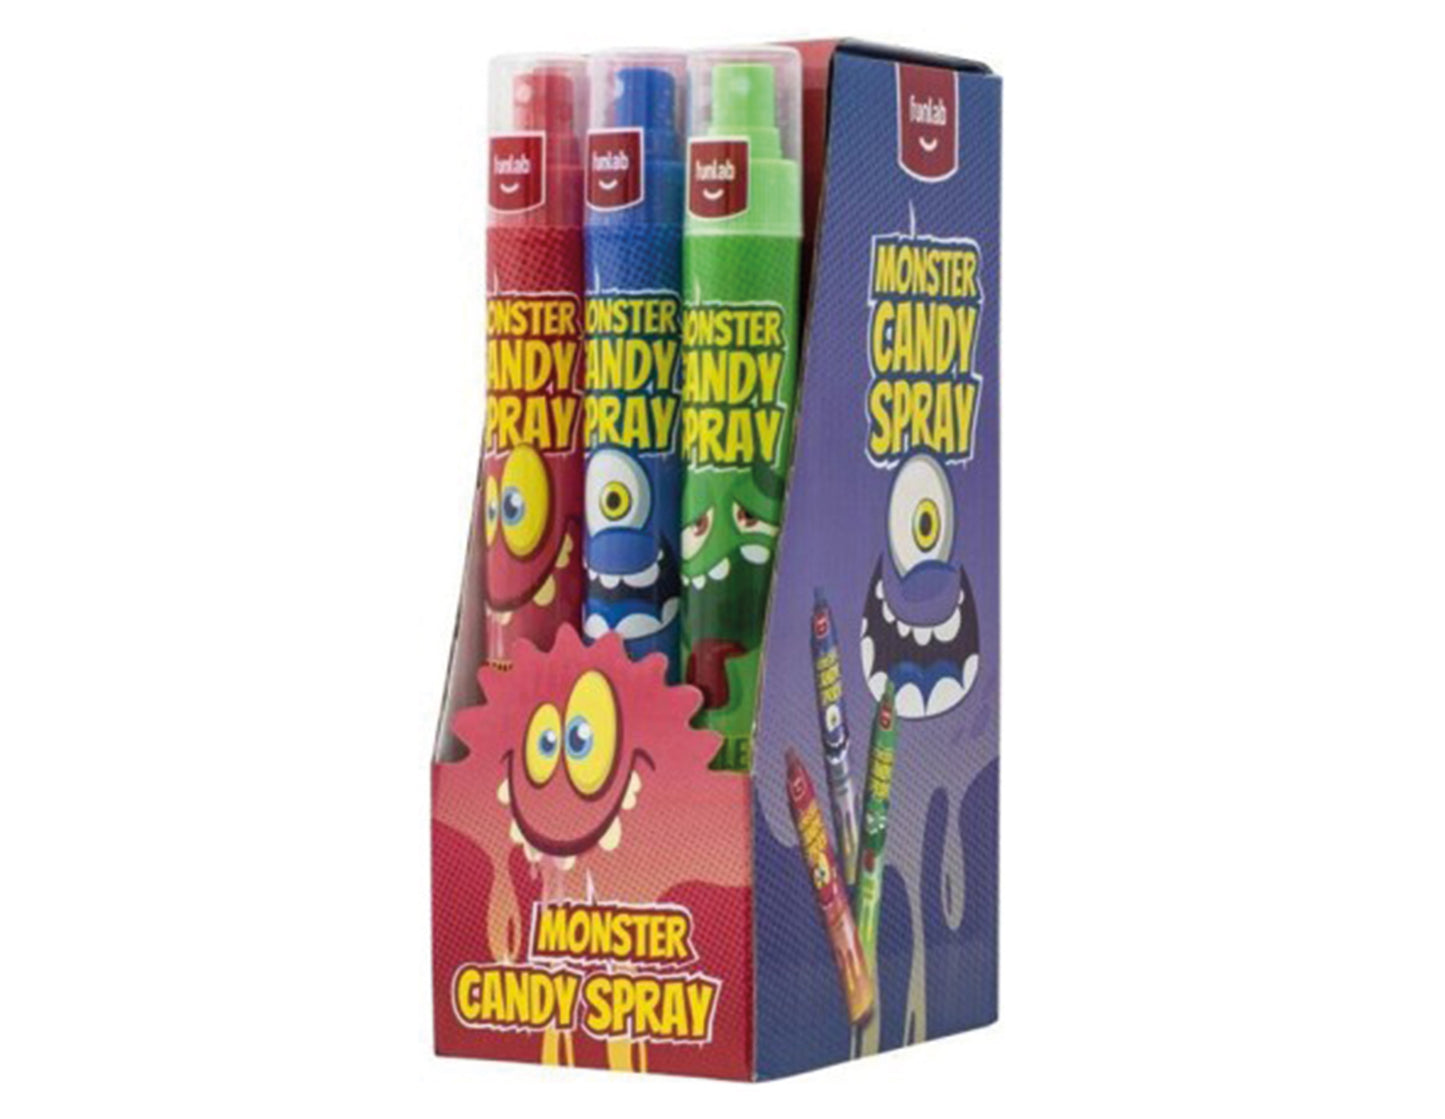 Monster candy spray